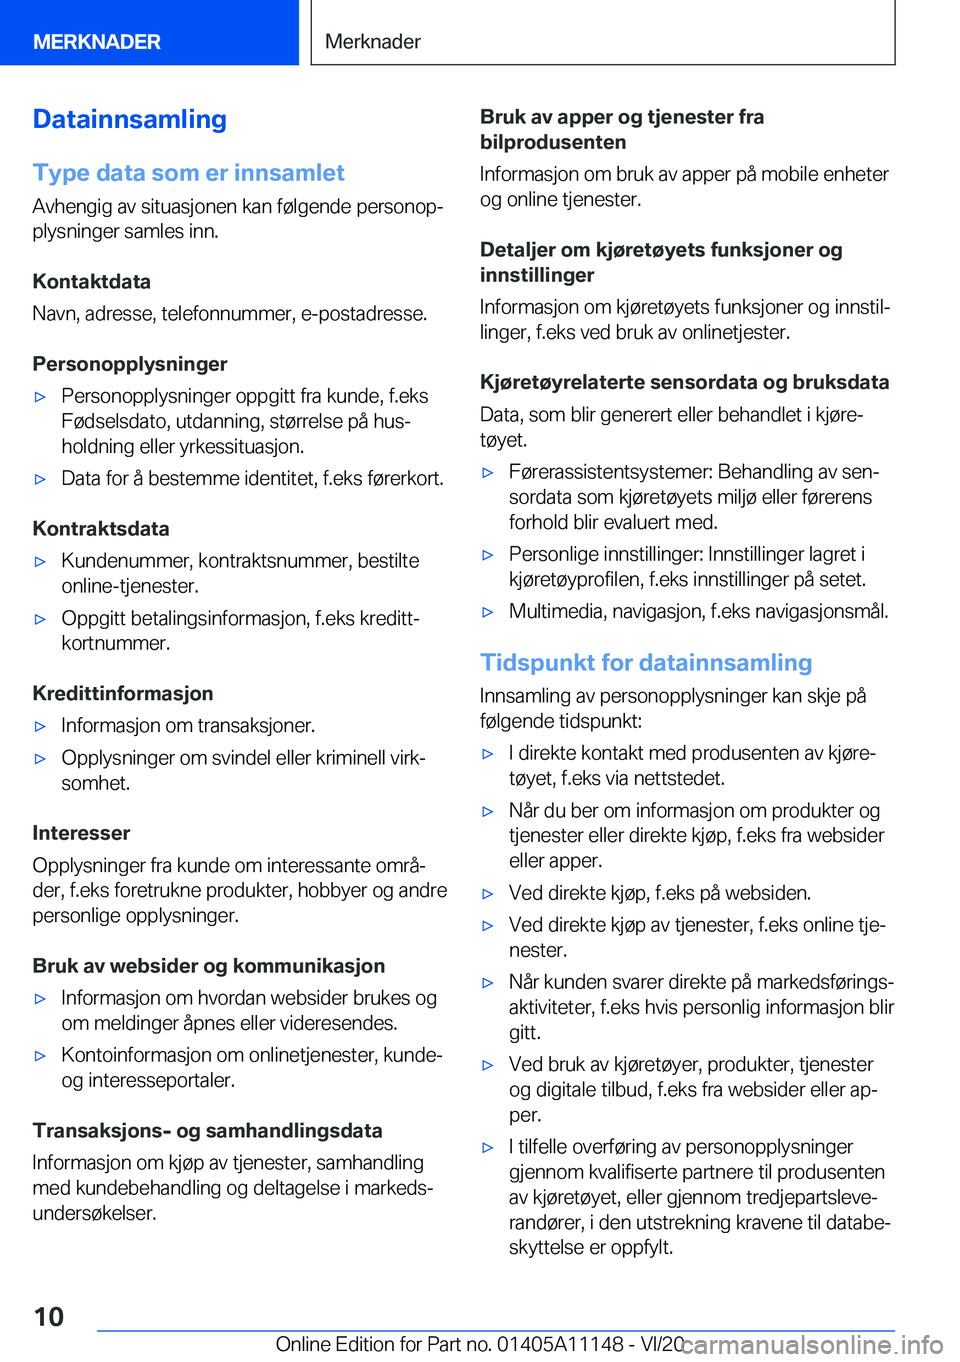 BMW 8 SERIES COUPE 2021  InstruksjonsbØker (in Norwegian) �D�a�t�a�i�n�n�s�a�m�l�i�n�g
�T�y�p�e��d�a�t�a��s�o�m��e�r��i�n�n�s�a�m�l�e�t �A�v�h�e�n�g�i�g��a�v��s�i�t�u�a�s�j�o�n�e�n��k�a�n��f�